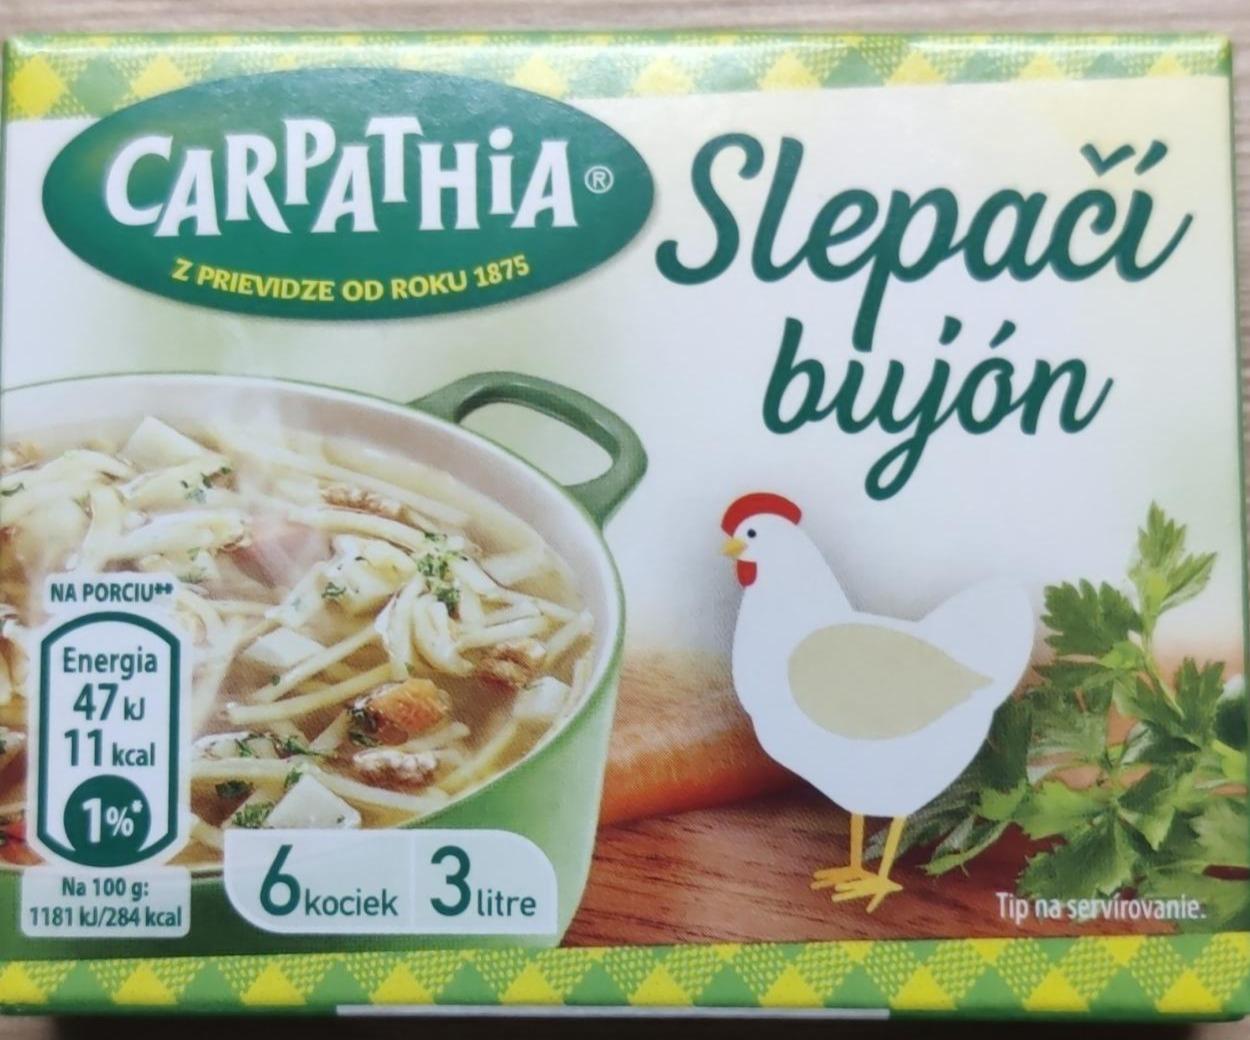 Fotografie - Slepačí bujón Carpathia